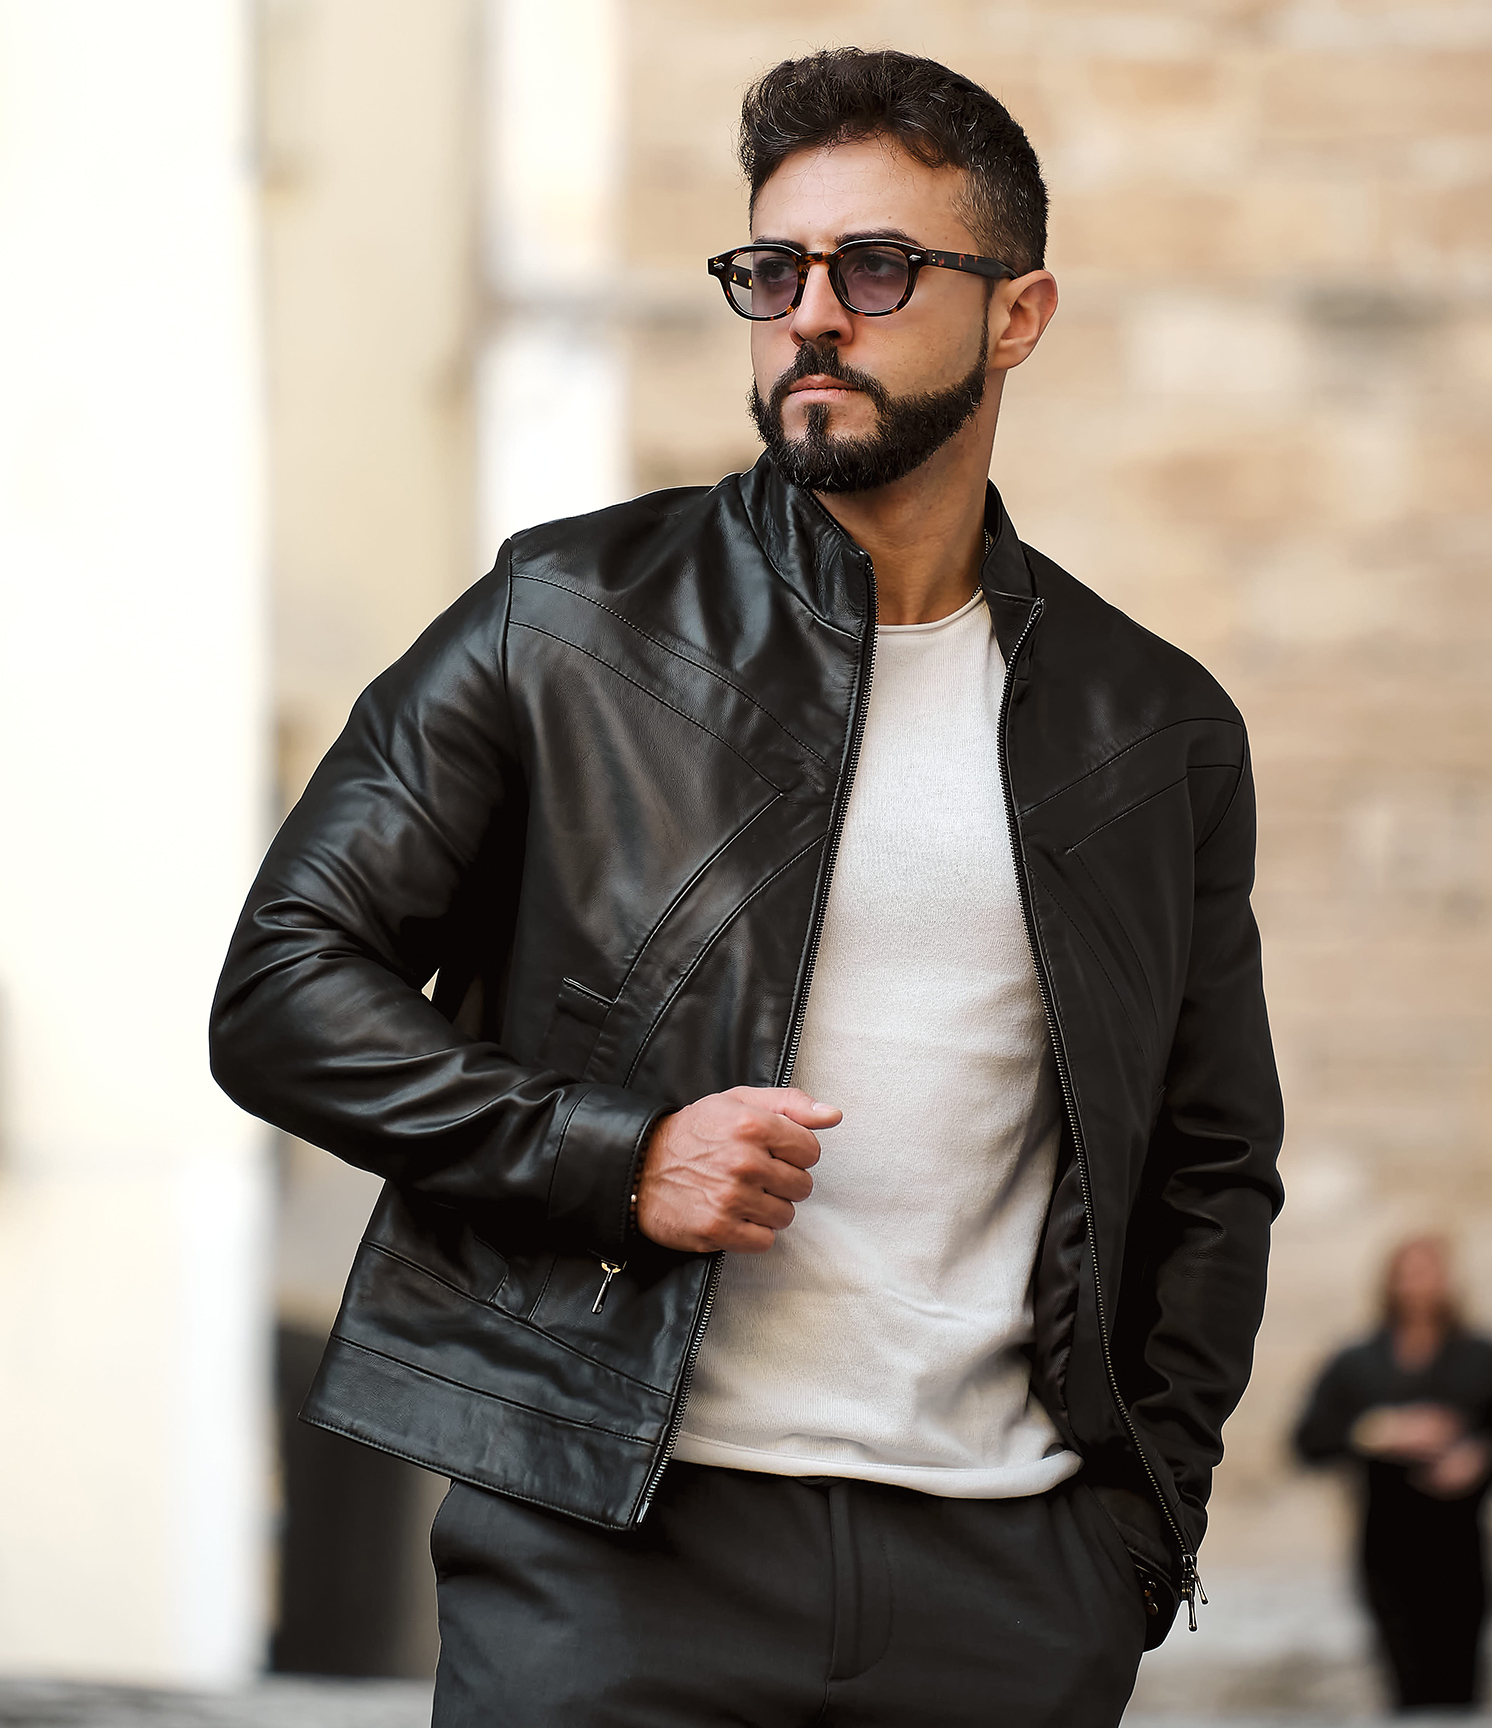 Jacket for men zen black, altieri confezioni - Altieri Confezioni